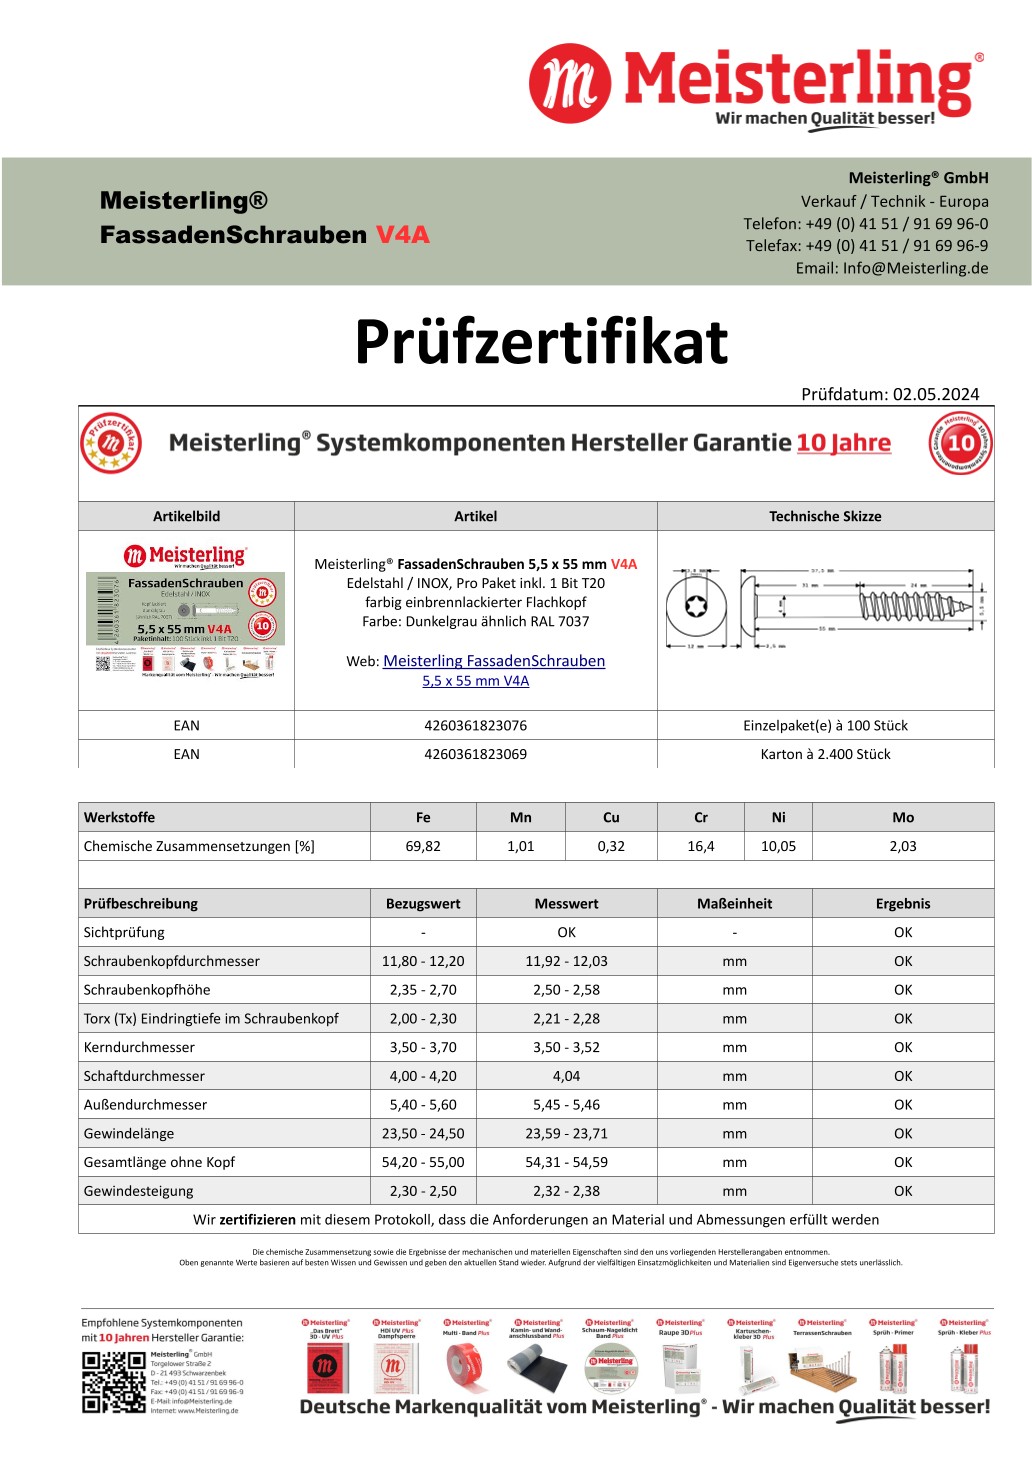 Prüfzertifikat Meisterling® FassadenSchrauben 5,5 x 55 mm V4a dunkelgrau